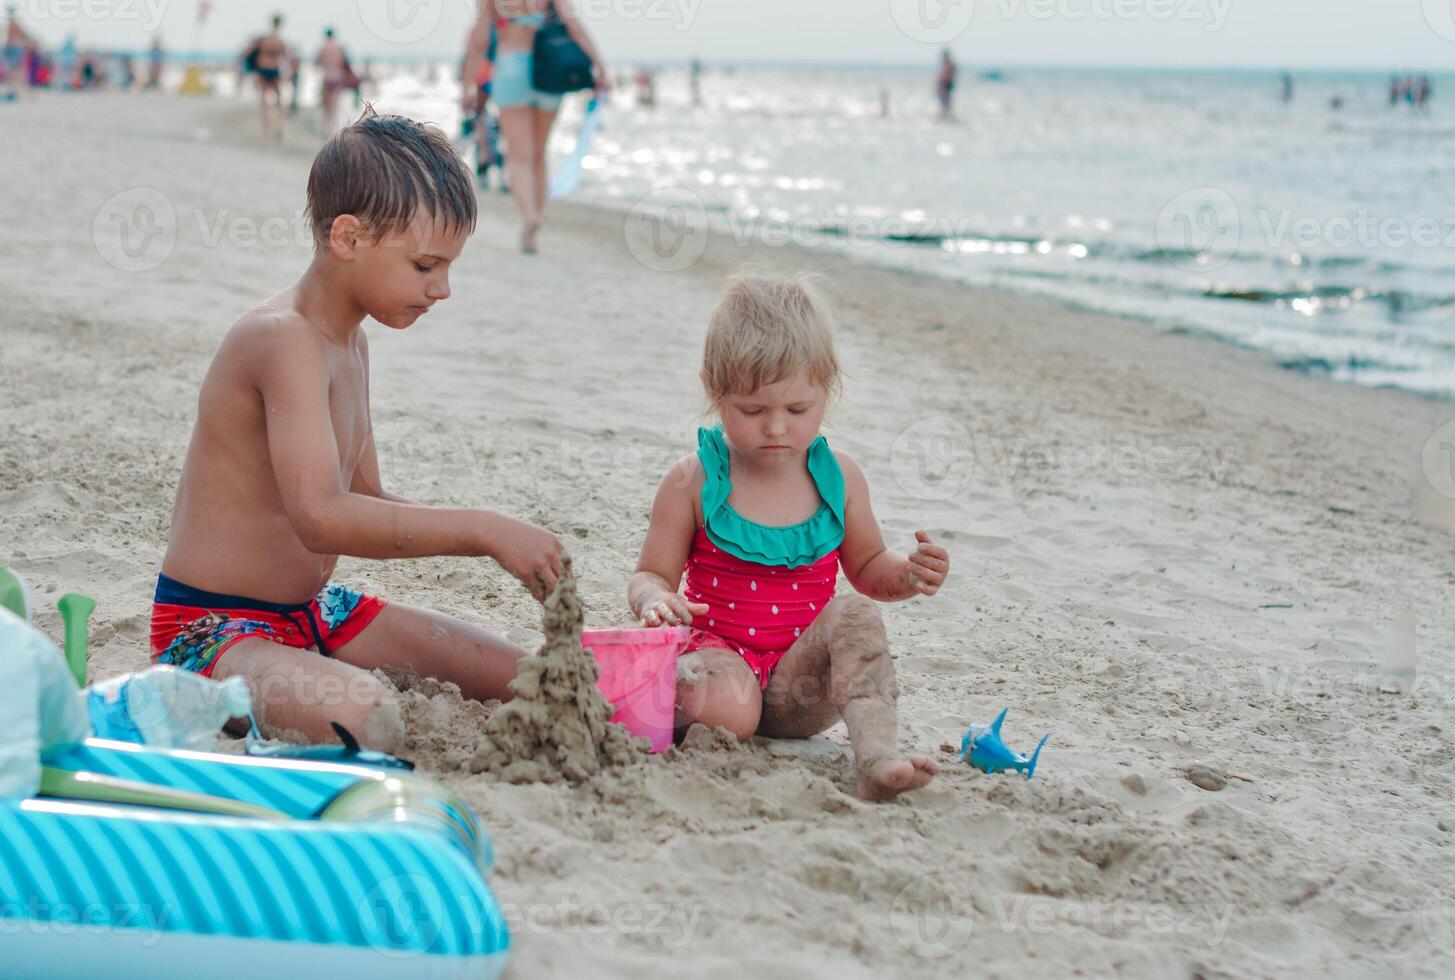 bror och syster framställning sand slott på de strand i värma sommar dag.familj sommar högtider begrepp. hög kvalitet Foto